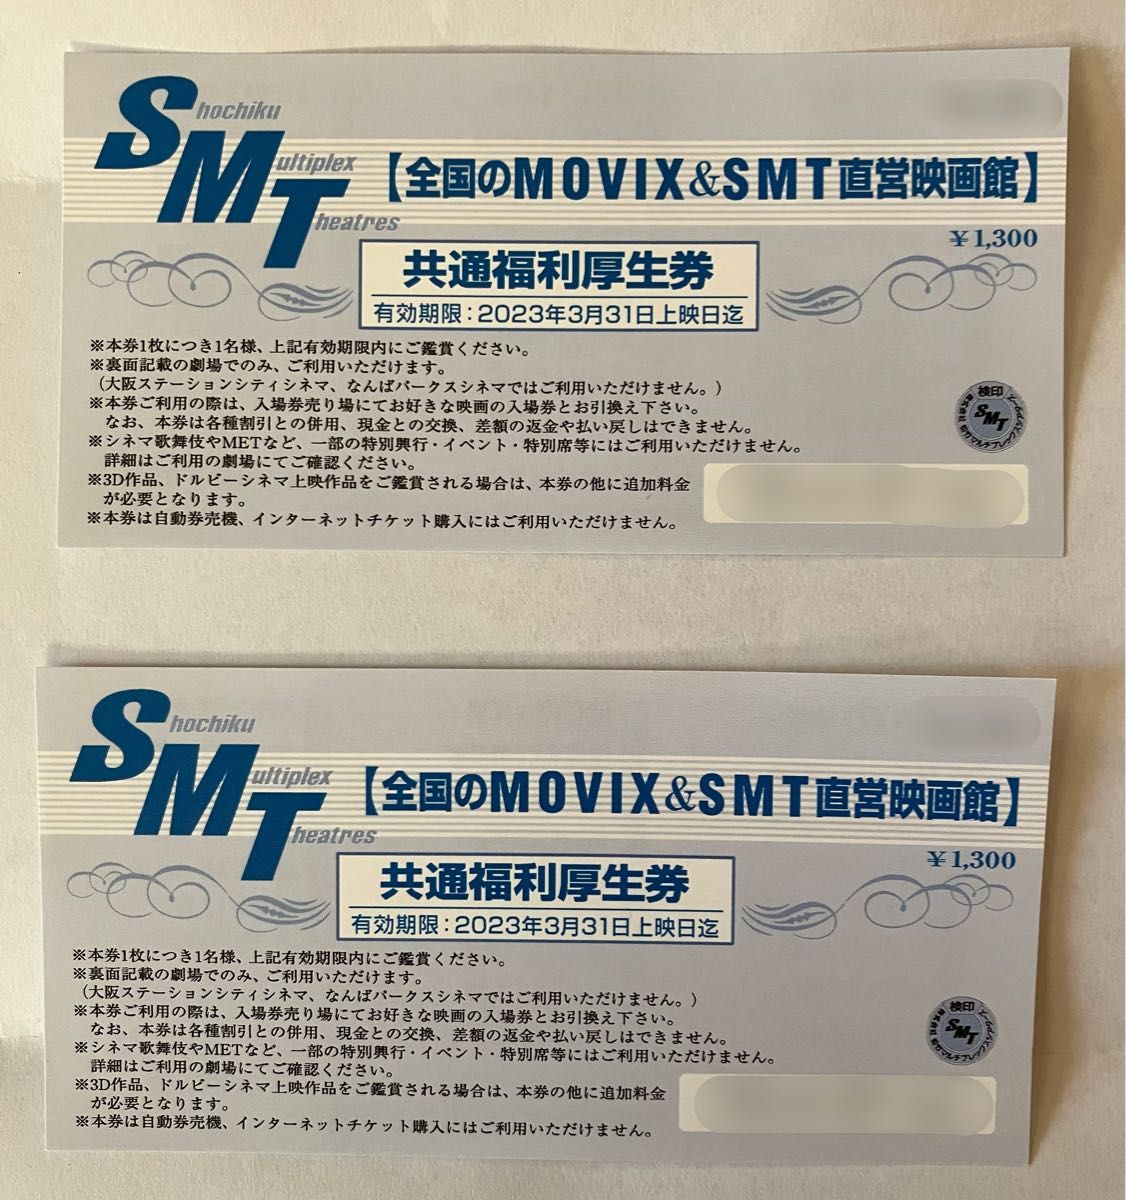 MOVIX SMT直営映画 共通福利厚生券4枚 - その他